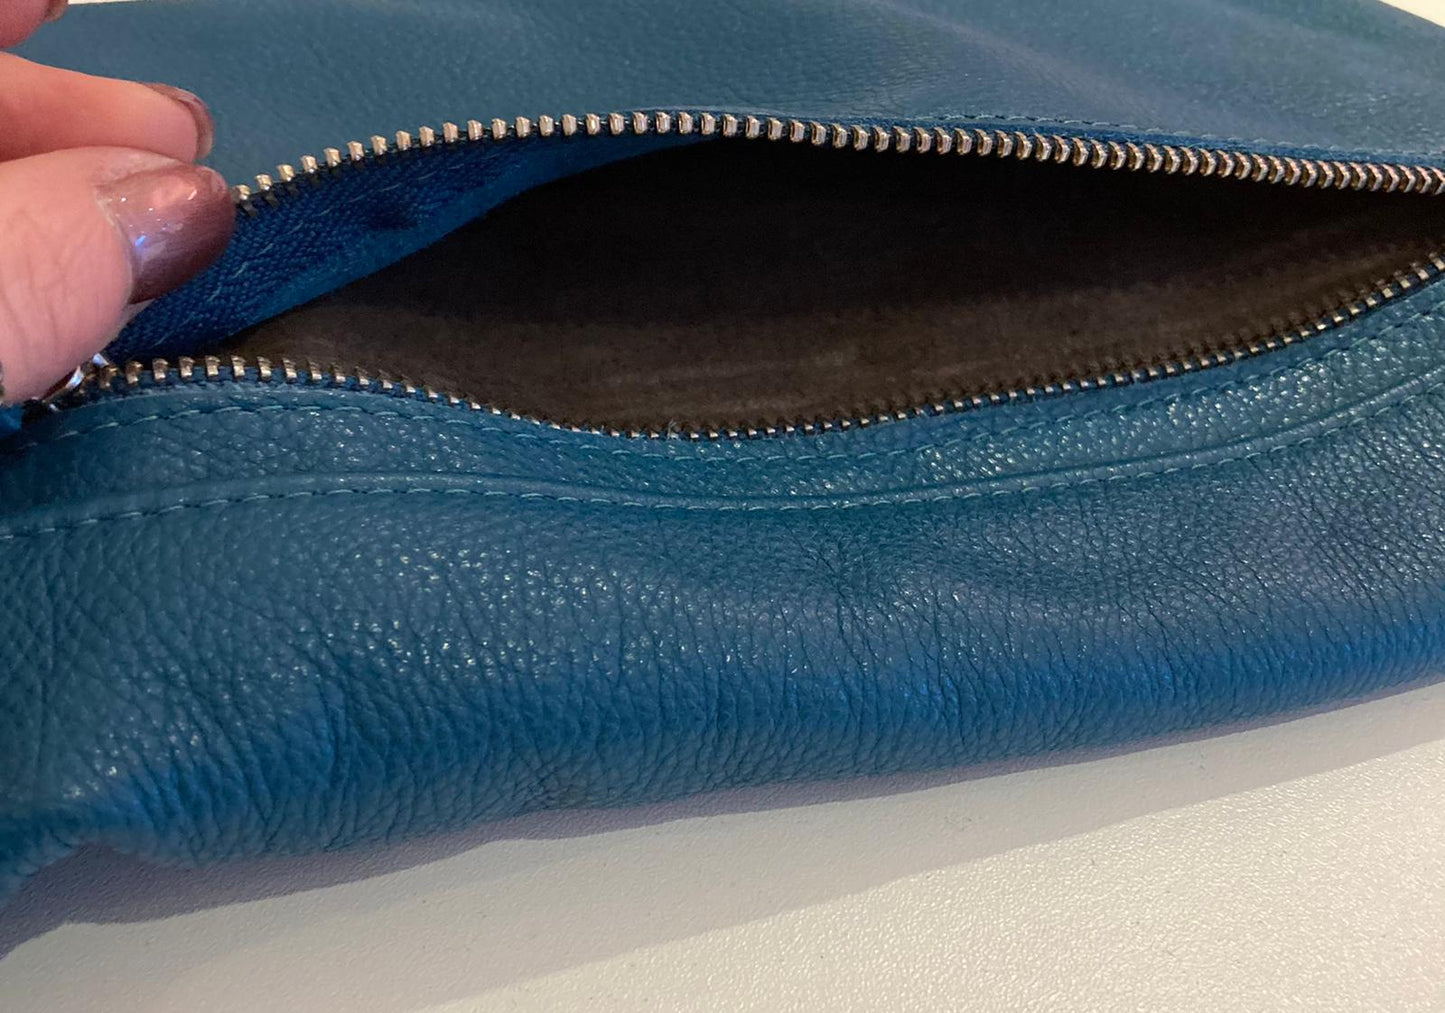 Owen Barry Teal Leather Handbag - Maya Maya Ltd